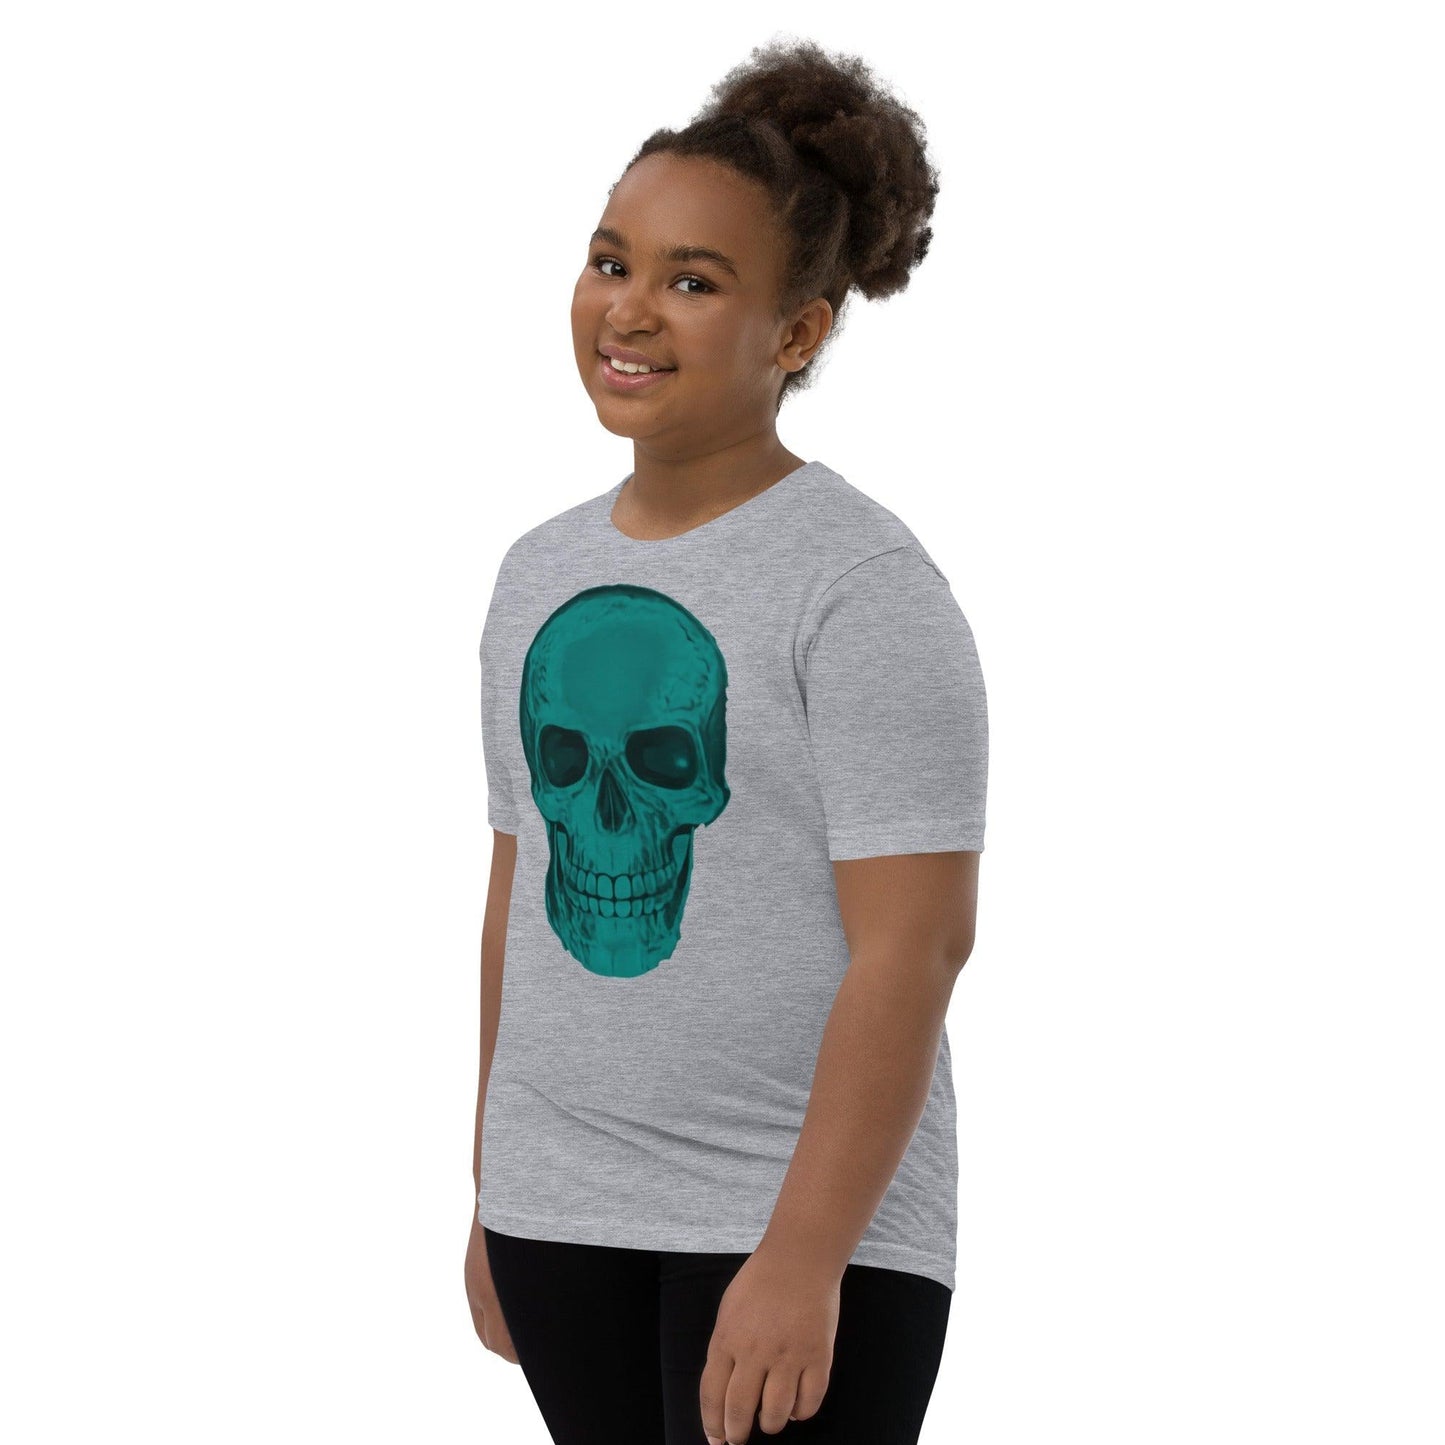 Blue Skull Youth Short Sleeve T-Shirt - Lizard Vigilante